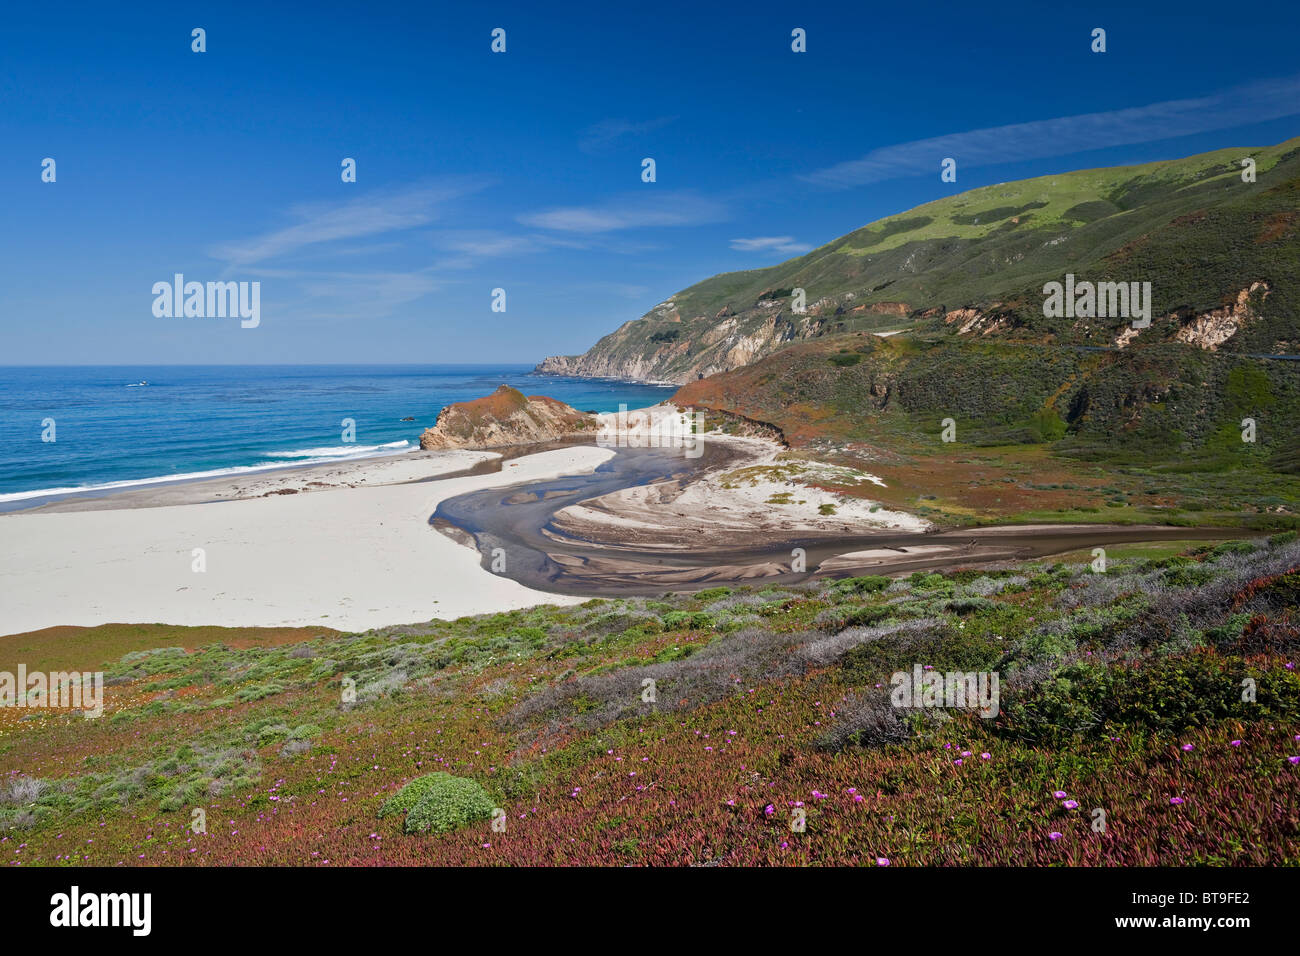 Spiaggia solitaria sull'Oceano Pacifico, Highway 1, CALIFORNIA, STATI UNITI D'AMERICA Foto Stock